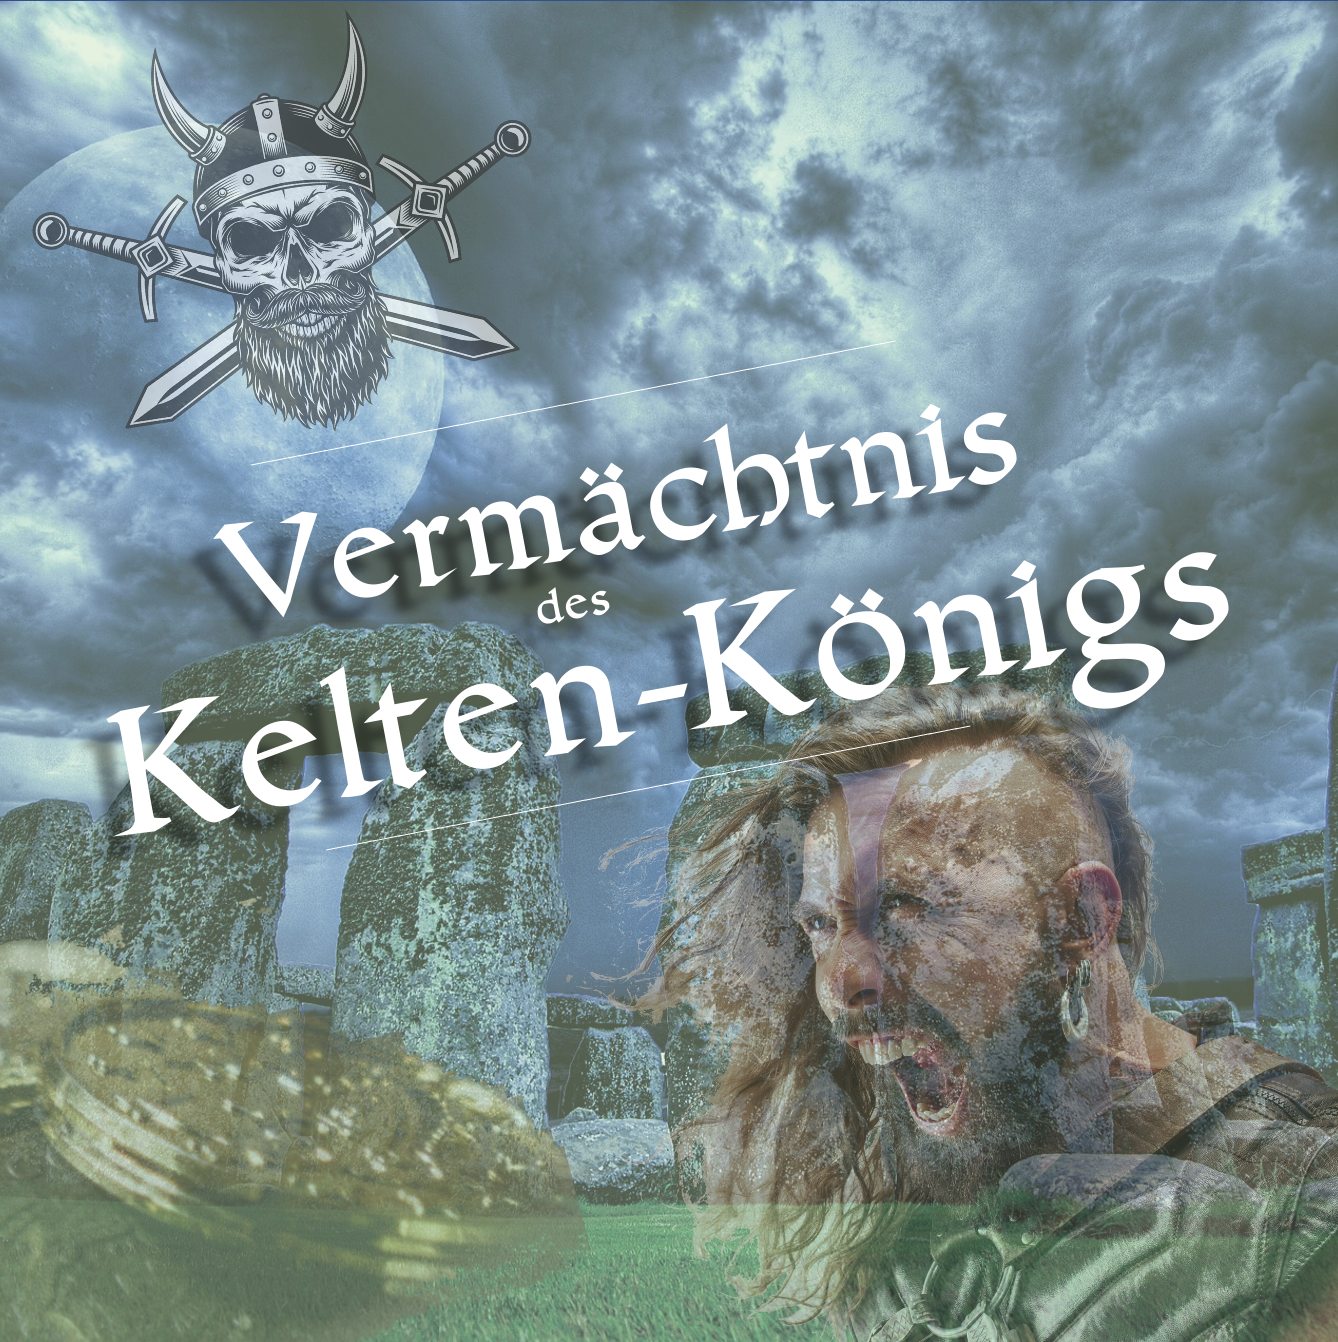 TICKET: VERMÄCHTNIS DES KELTEN-KÖNIGS - LEONDING